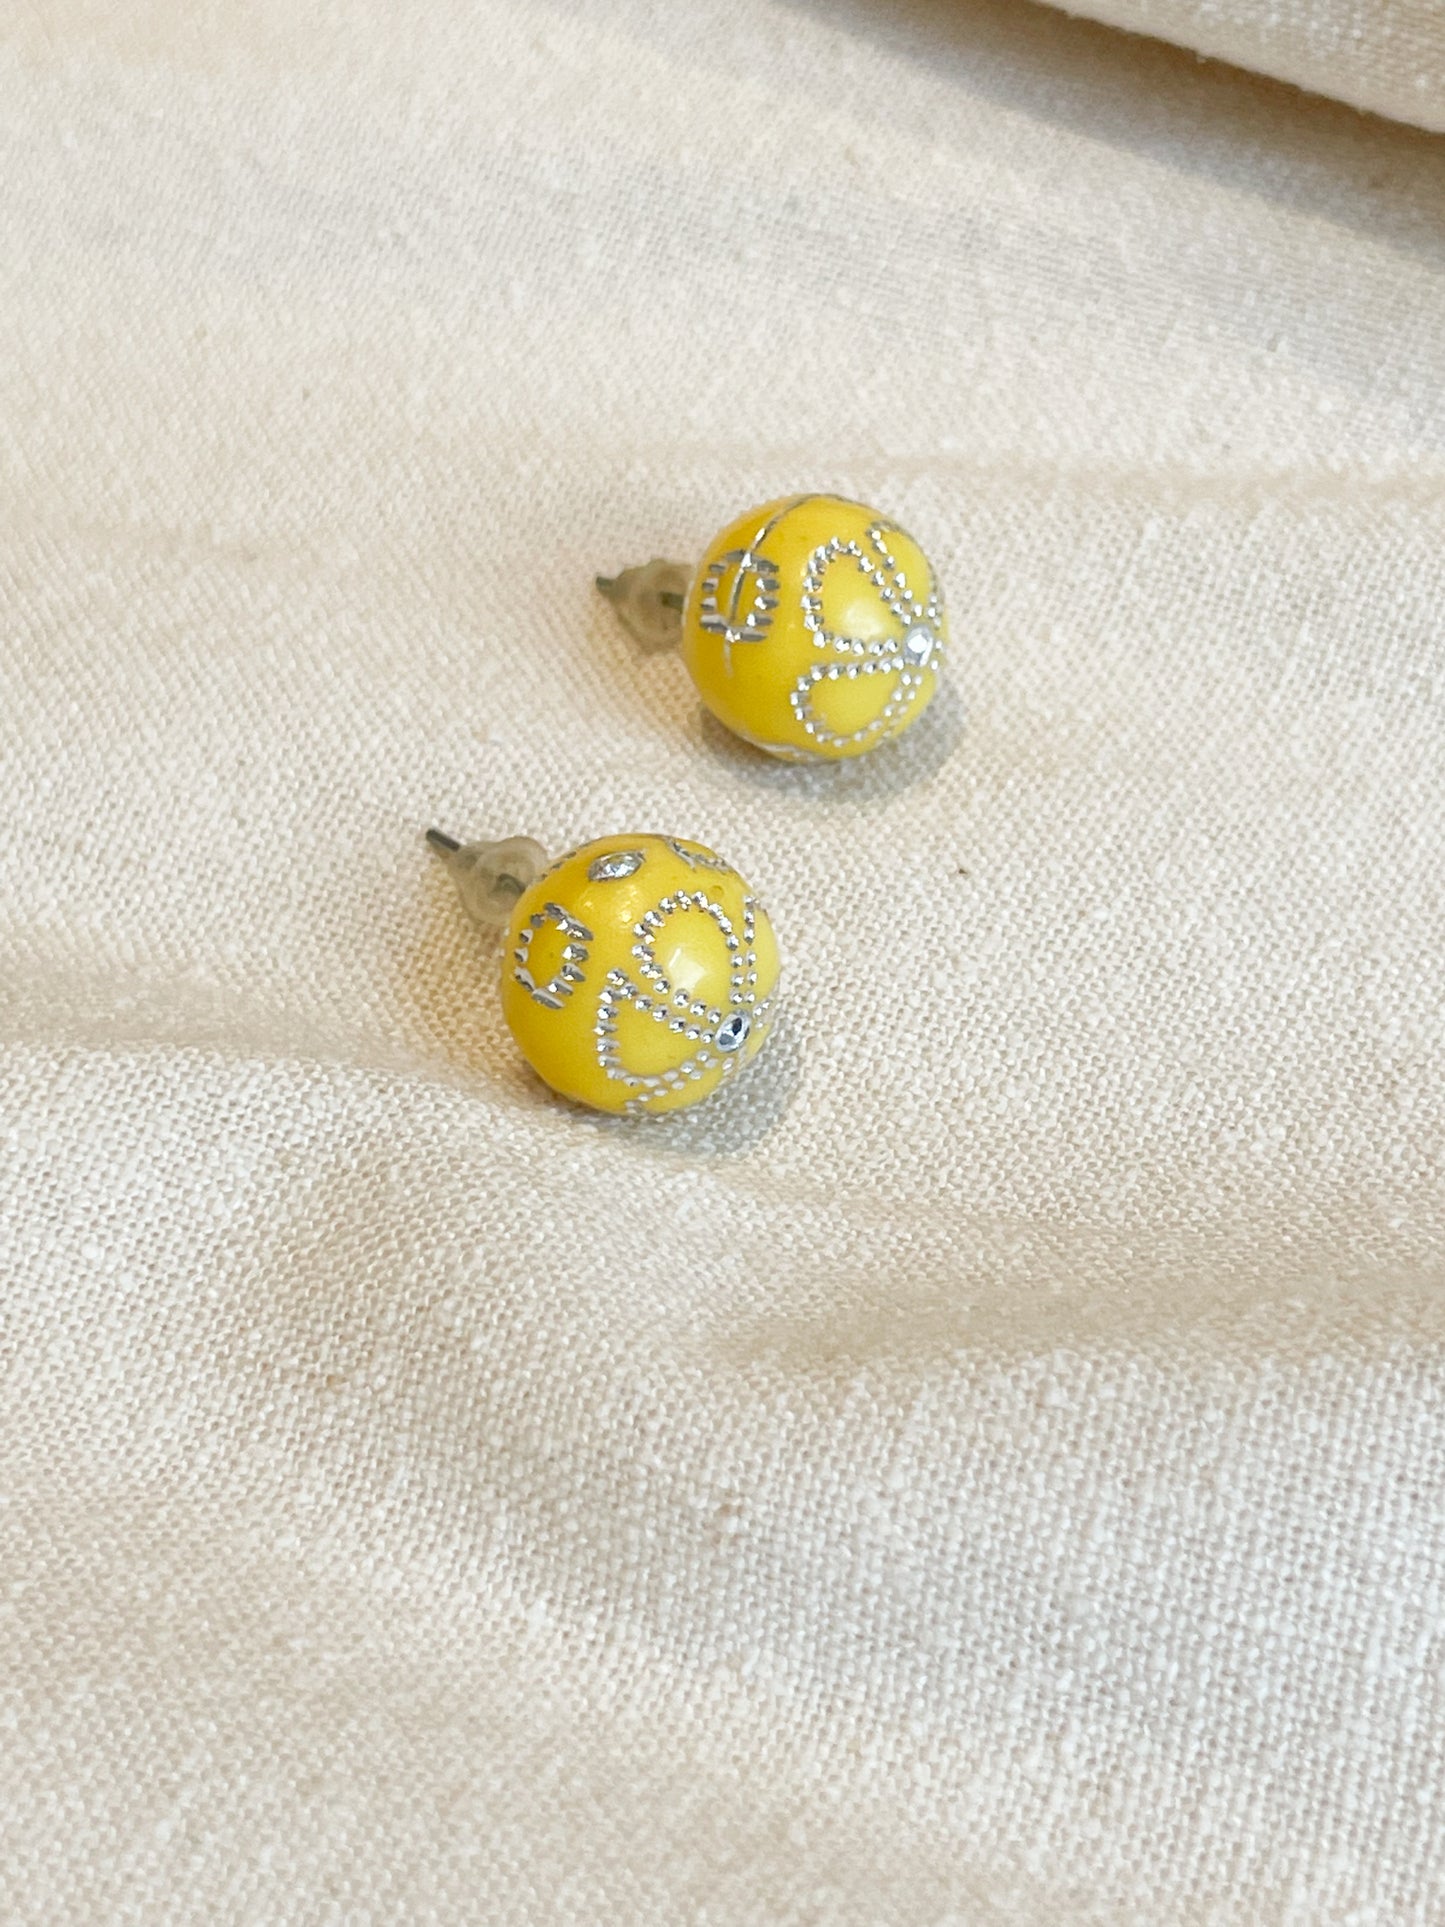 Yellow Flower Stud Earrings